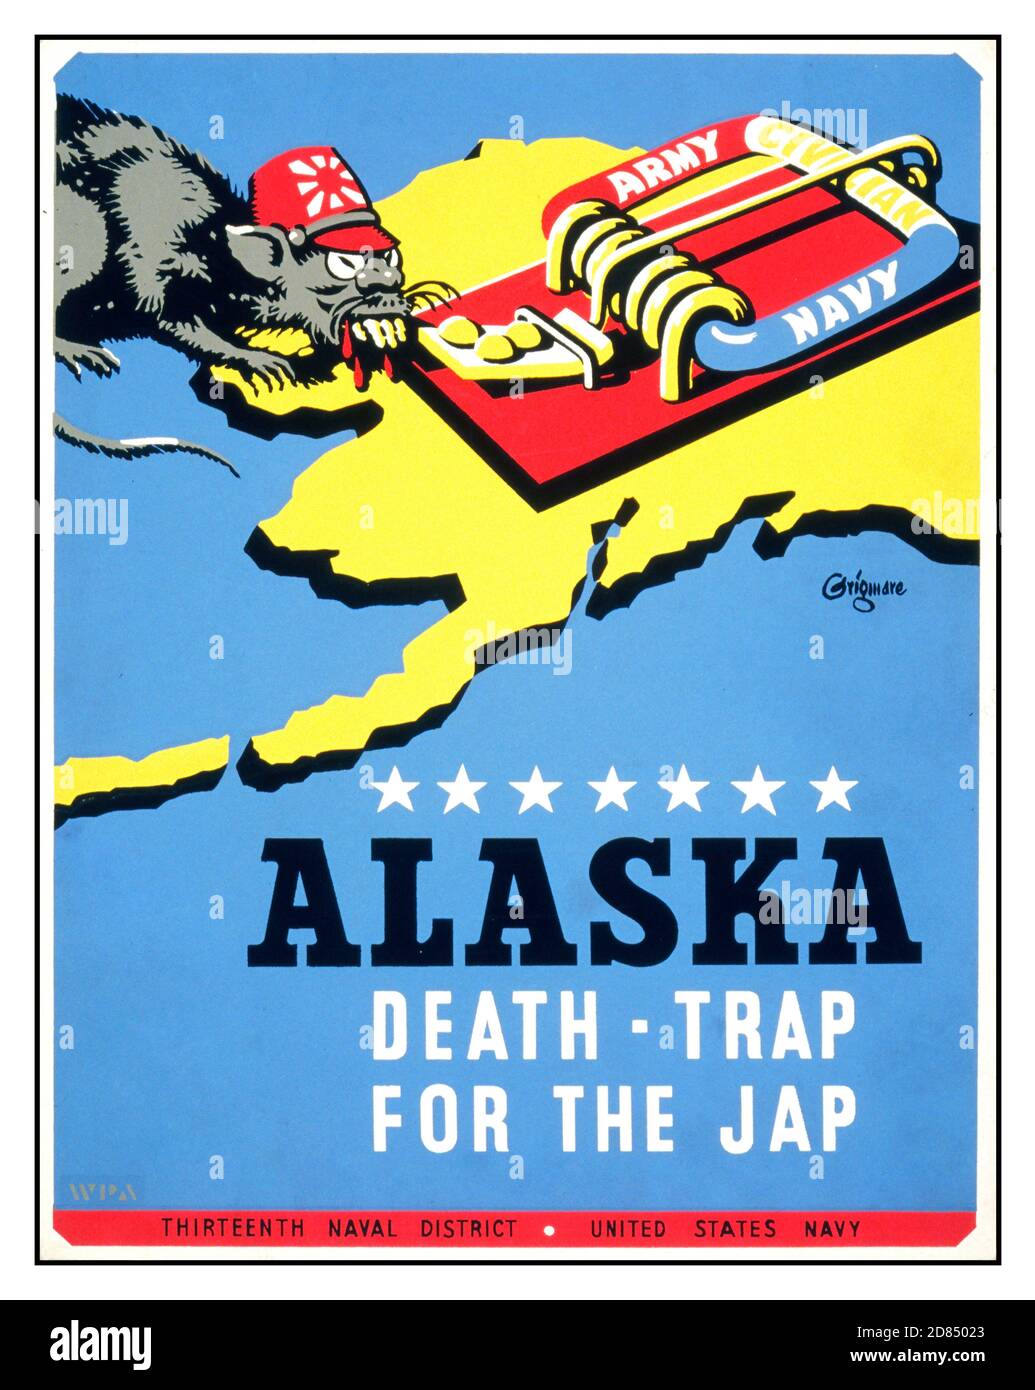 Poster della seconda guerra mondiale contro la propaganda giapponese americana ‘Alaska - trappola della morte per il giap’. Artwork by Edward T. Grigware , 1889-1960 artist WPA Art Project, [tra il 1941 e il 1943] (poster) : serigrafia, colore. Poster per il tredicesimo Distretto Navale, Marina degli Stati Uniti, che mostra un ratto che rappresenta uno stereotipo giapponese soldato, si avvicina a un mousetrap etichettato 'Army Navy Civilian', su una mappa di sfondo dello stato dell'Alaska. Foto Stock